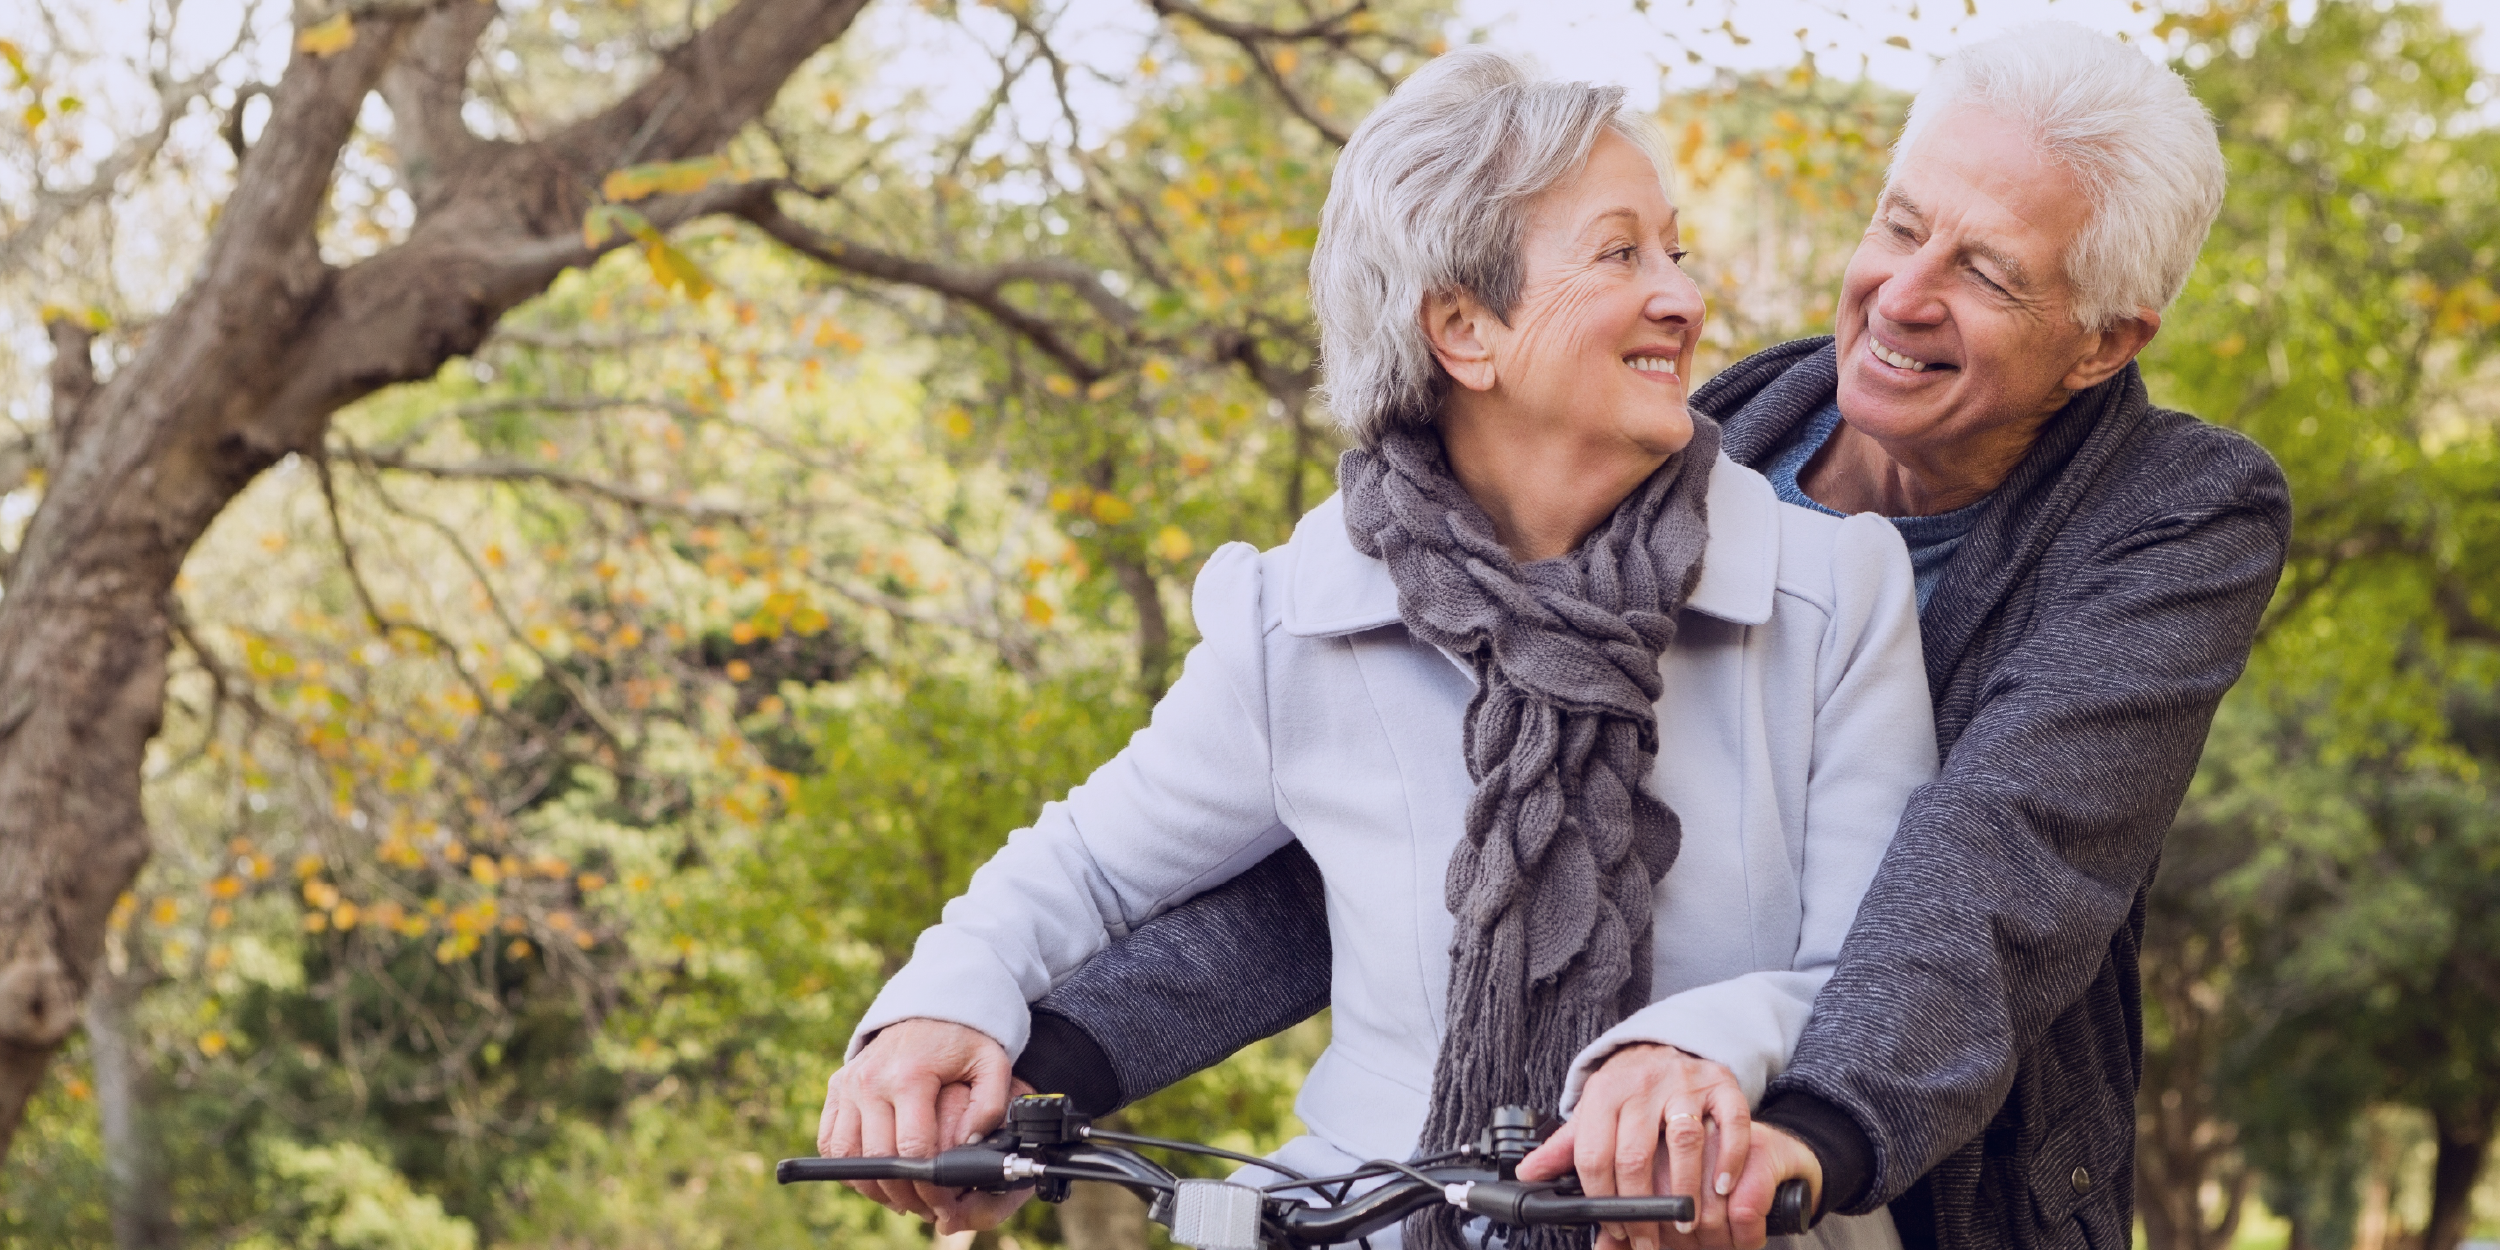 Foto de um belo casal idoso, com belos sorrisos, olhando um para o outro enquanto andam de bicicleta.